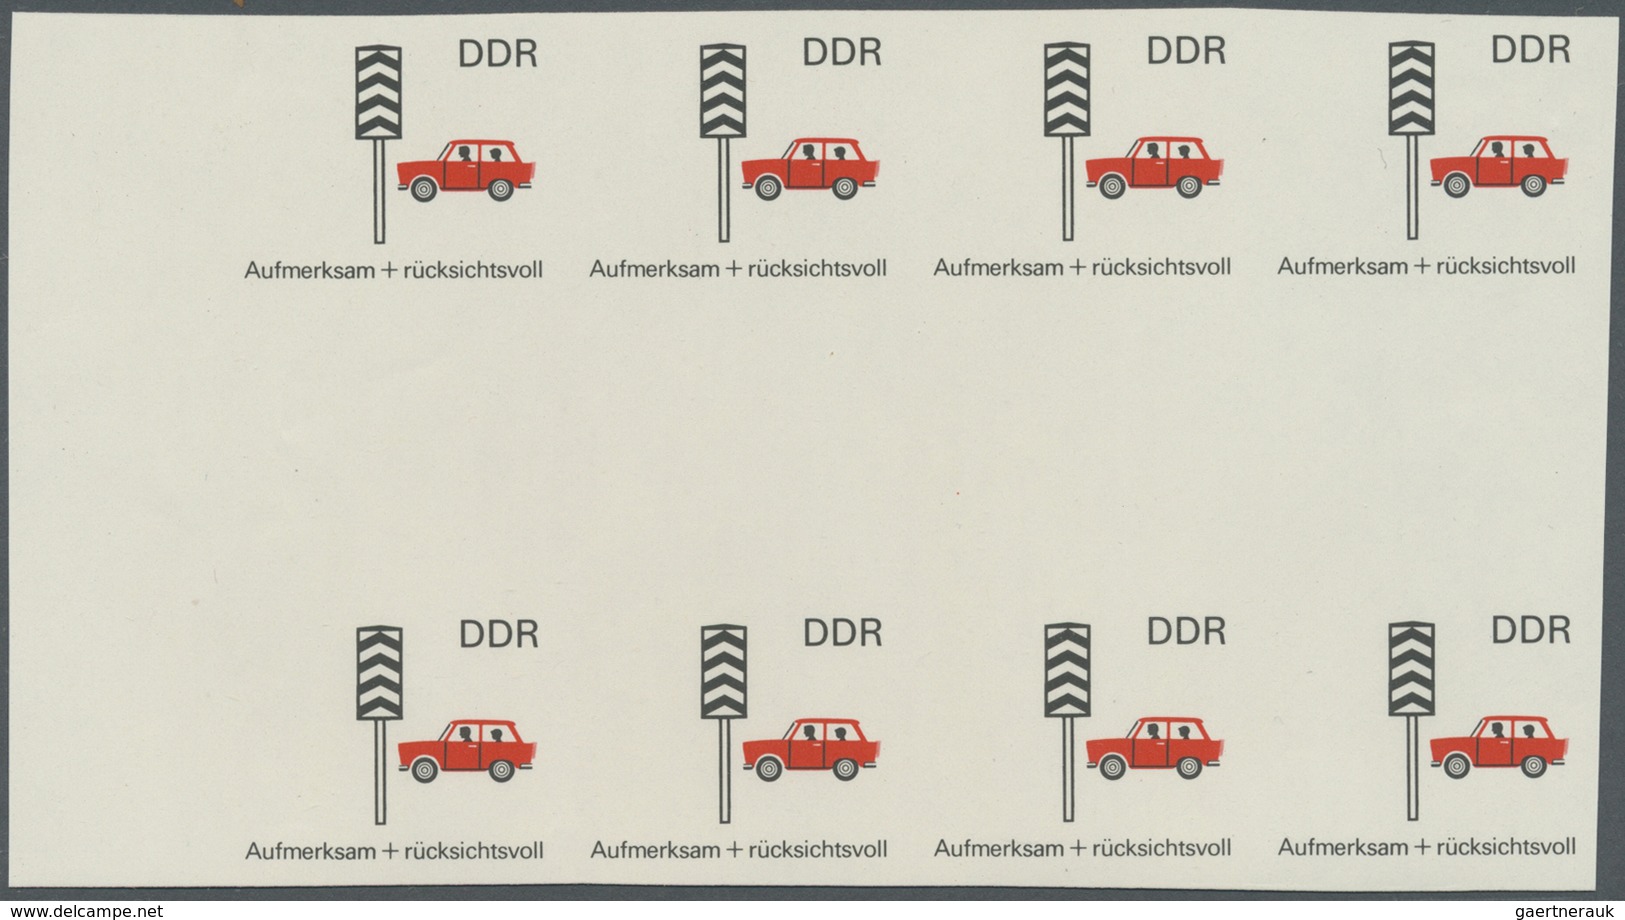 ** DDR: 1969, Sicherheit im Straßenverkehr 5 Pf. 'Rücksichtnahme auf Fußgänger' in 6 verschiedenen unge